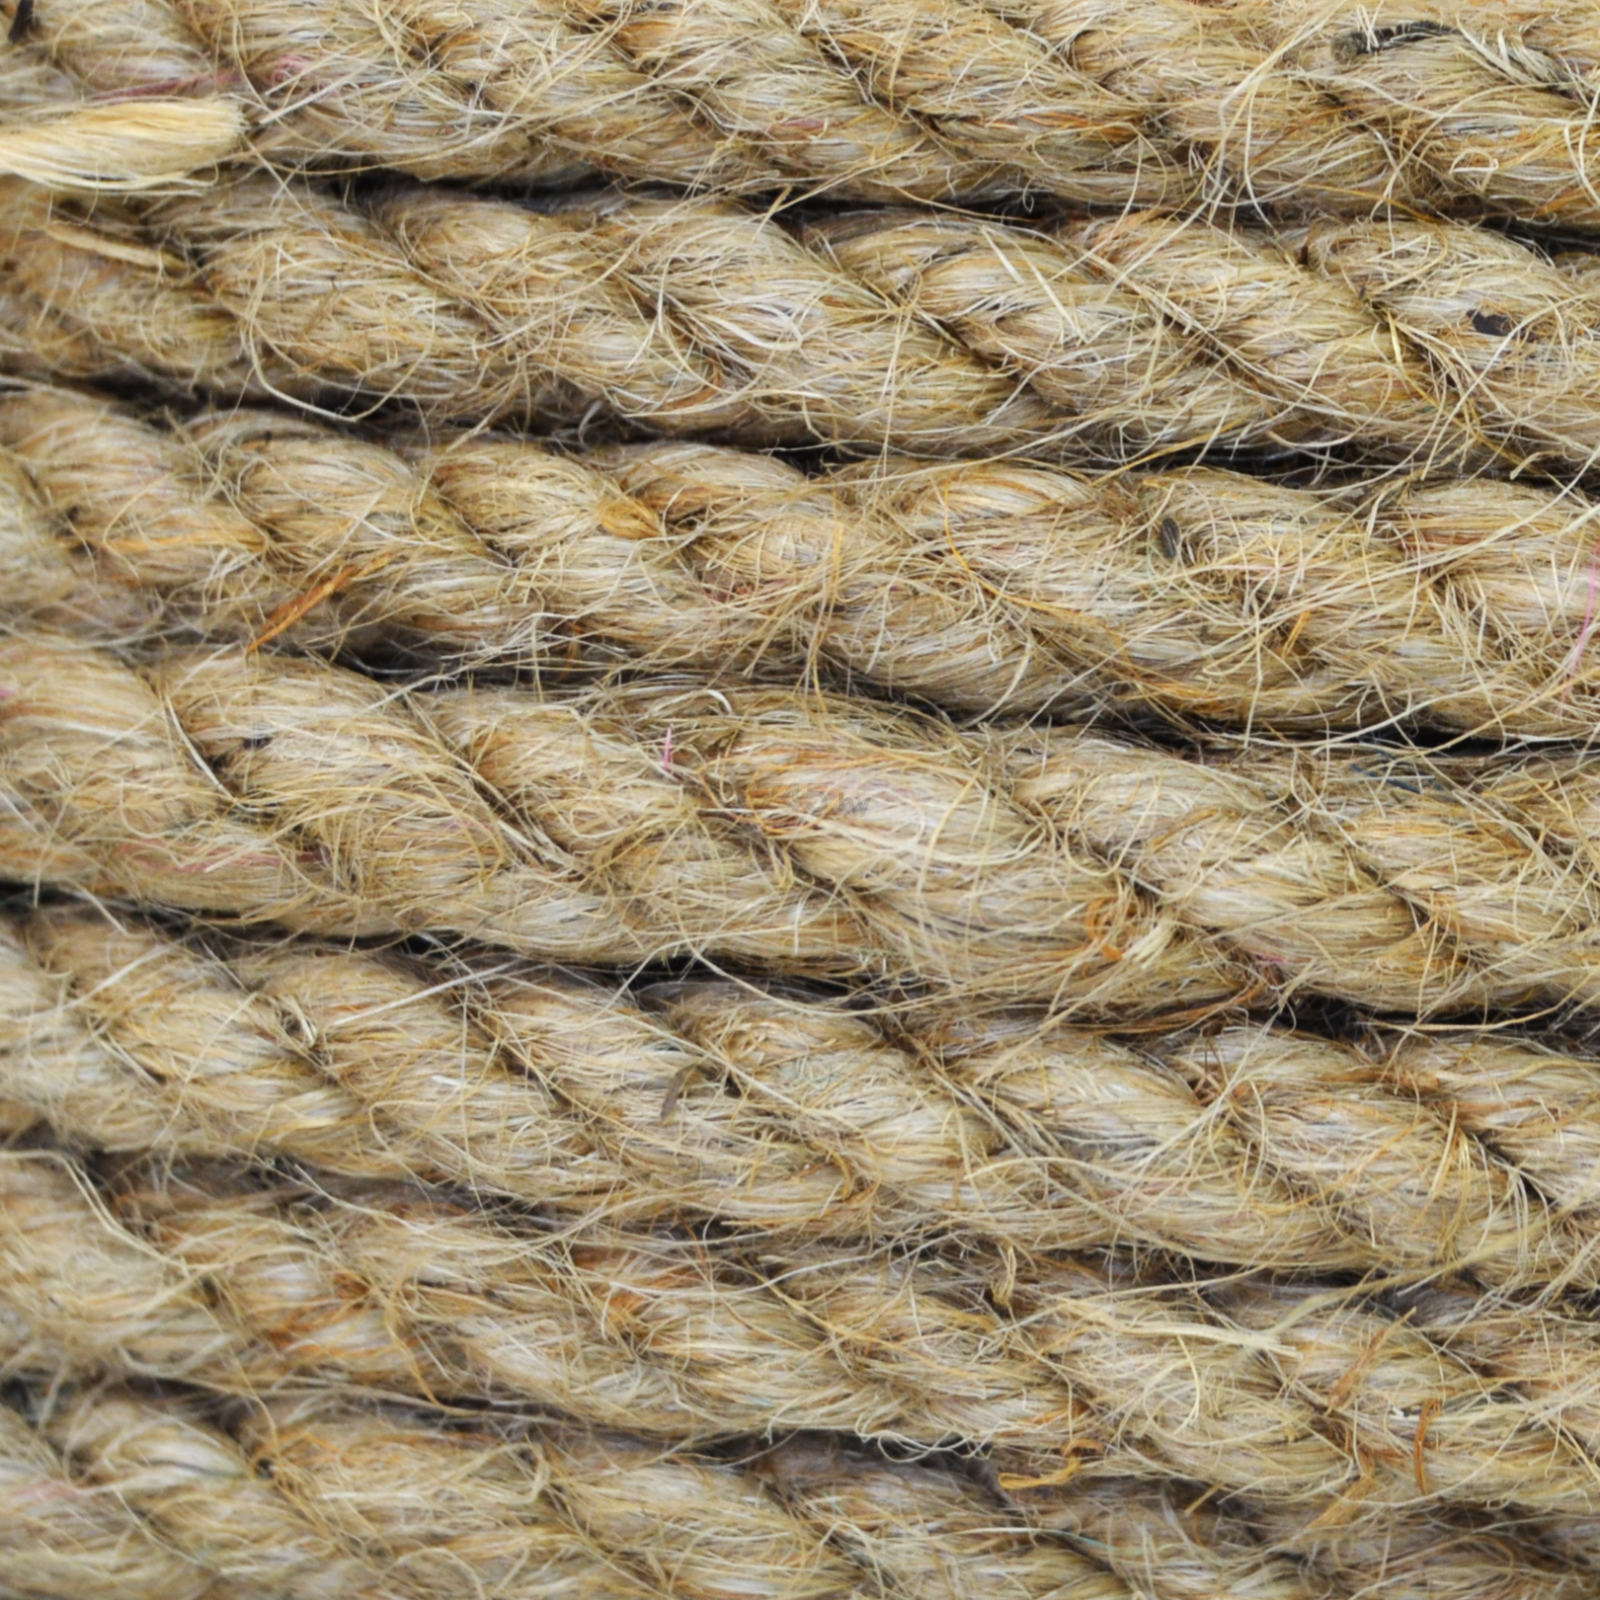 Канат джутовый TRUENERGY Rope jute 6 мм х 20 м (12159) - Фото 2